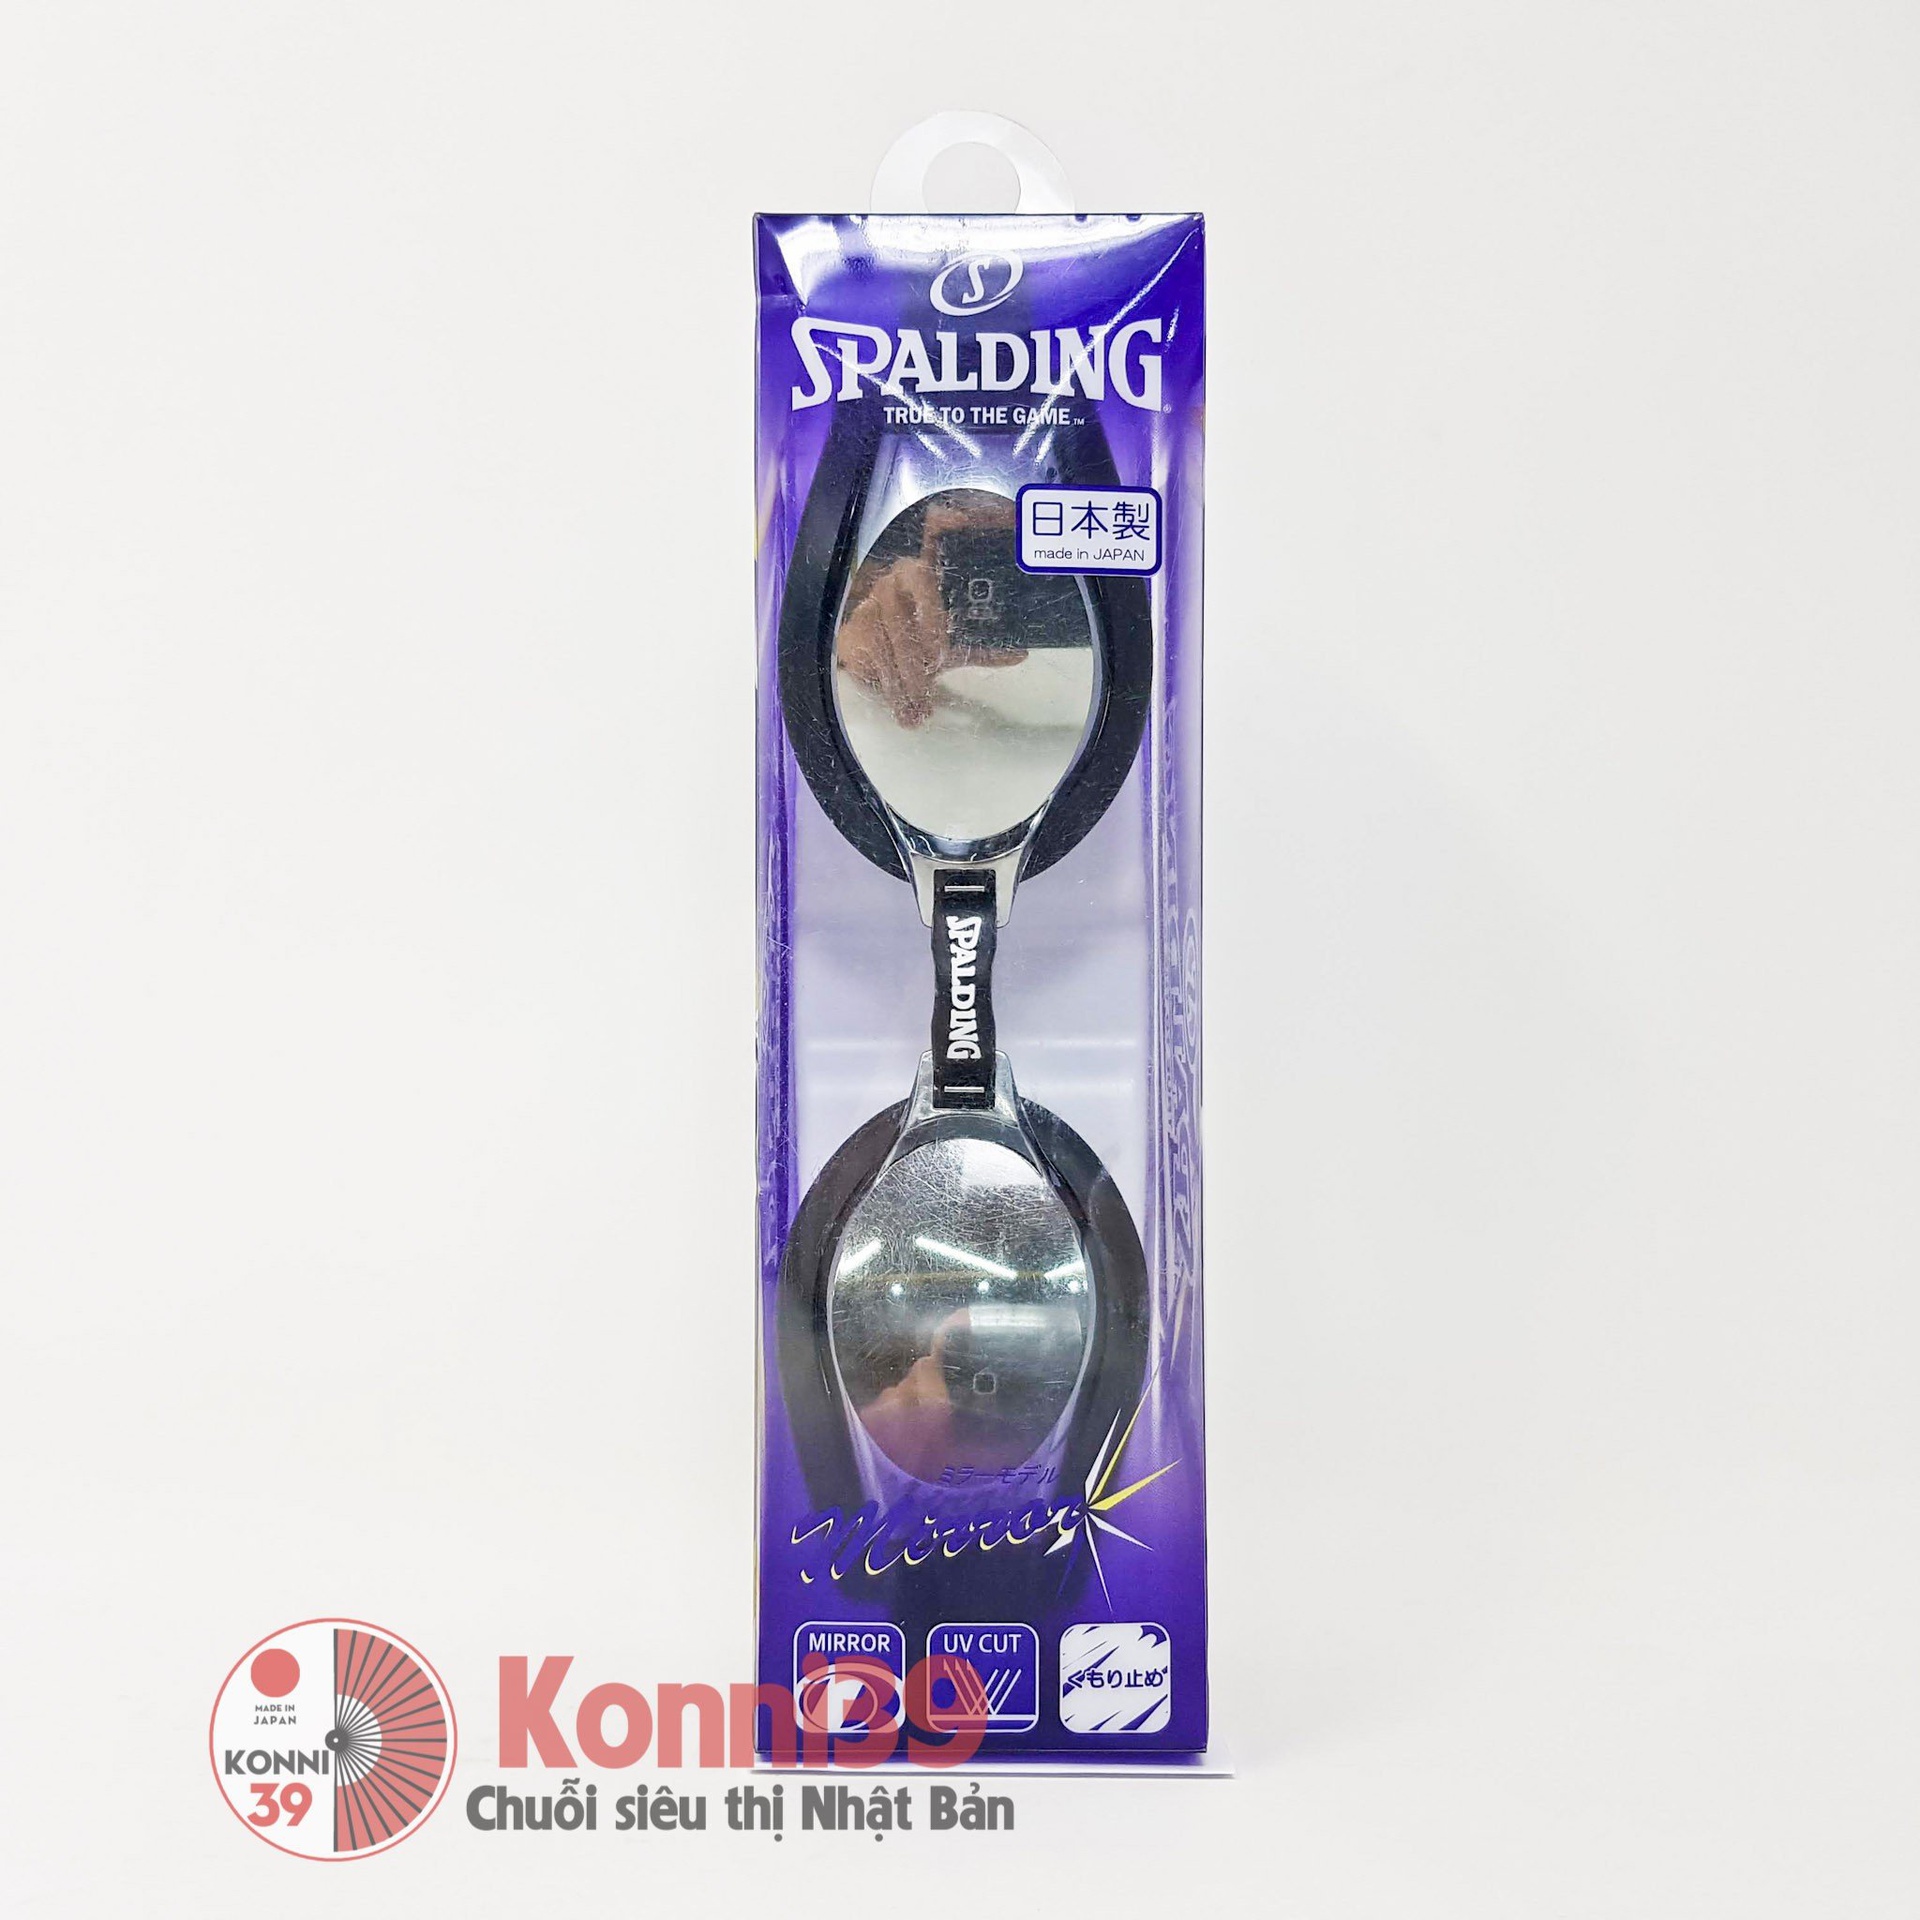 Kính bơi Spalding kính gương cho người lớn SPS-100M (chống mờ, chống UV, sillicon mềm) - đen